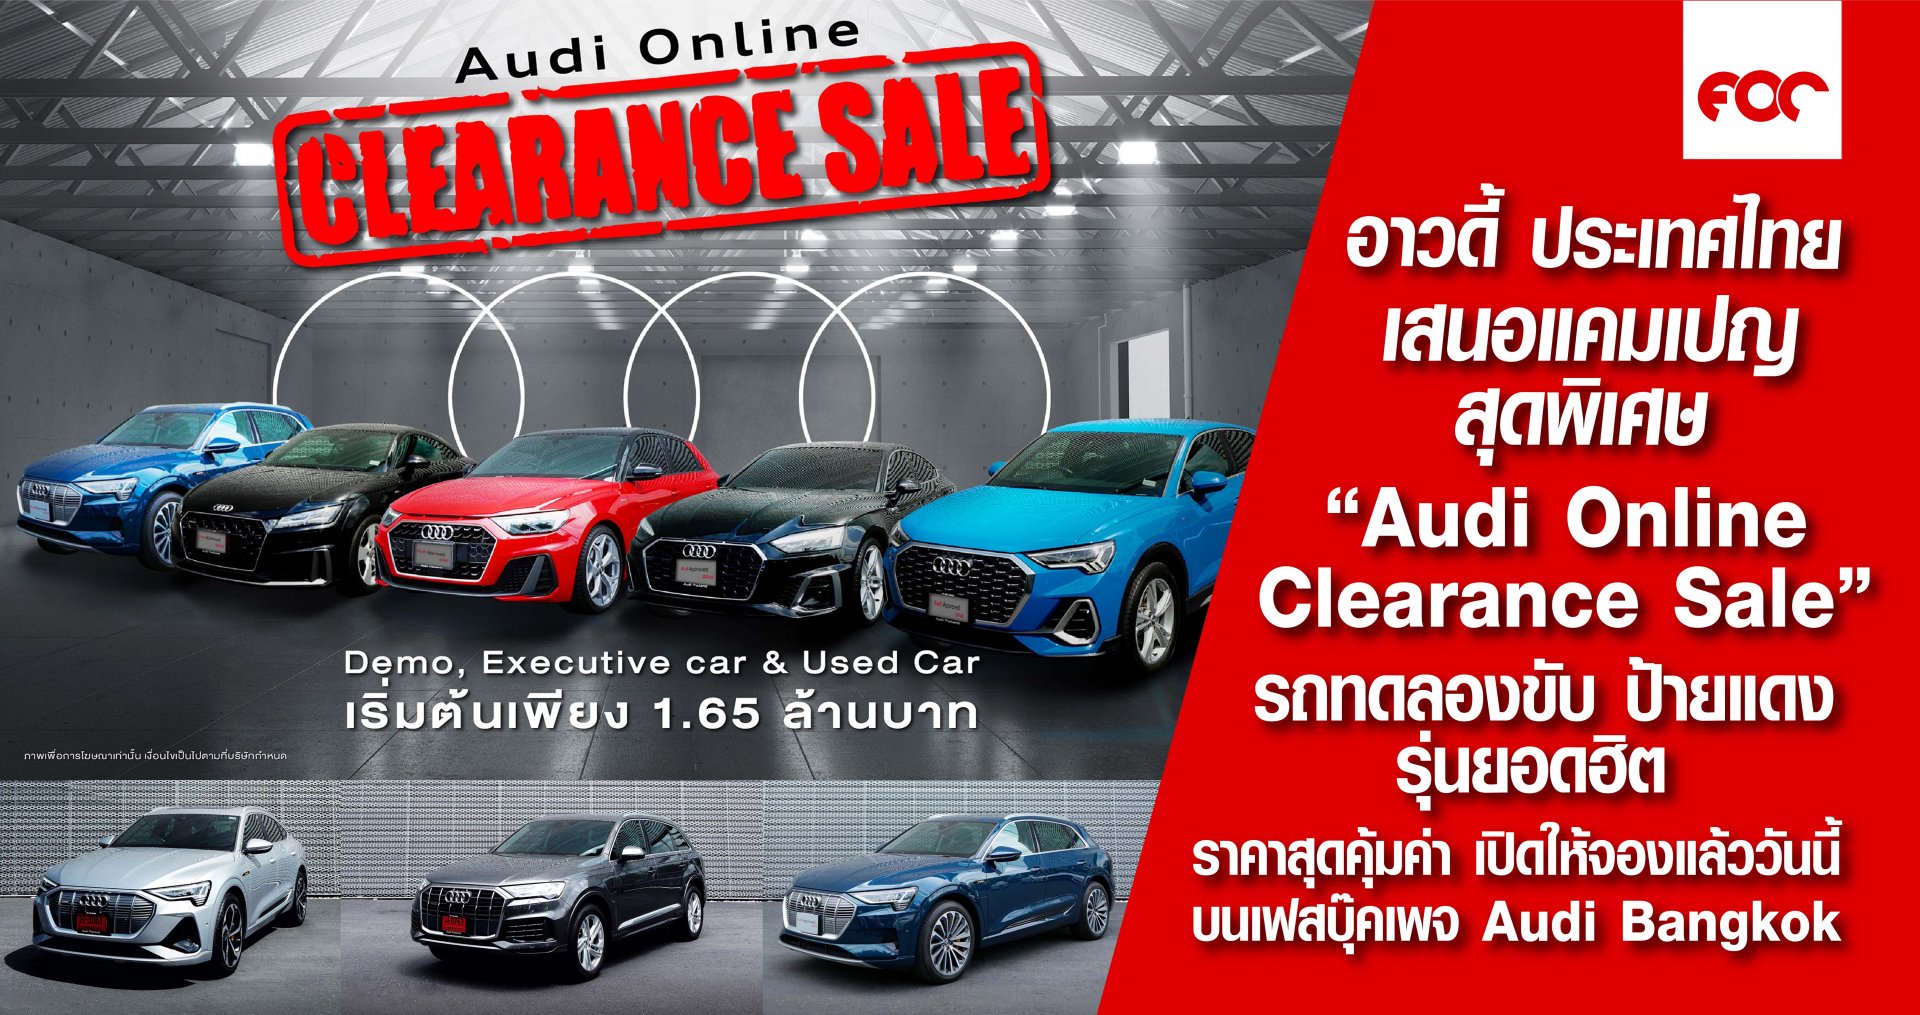 อาวดี้ ประเทศไทย เอาใจลูกค้า เสนอแคมเปญสุดพิเศษ  “Audi Online Clearance Sale” นำรถผู้บริหาร รถทดลองขับ ป้ายแดงไมล์น้อย   รุ่นยอดฮิต คุณภาพเยี่ยม ในราคาสุดคุ้มค่า เปิดให้จองพร้อมกันแล้ววันนี้  บนเฟสบุ๊คแฟนเพจ Audi Bangkok   